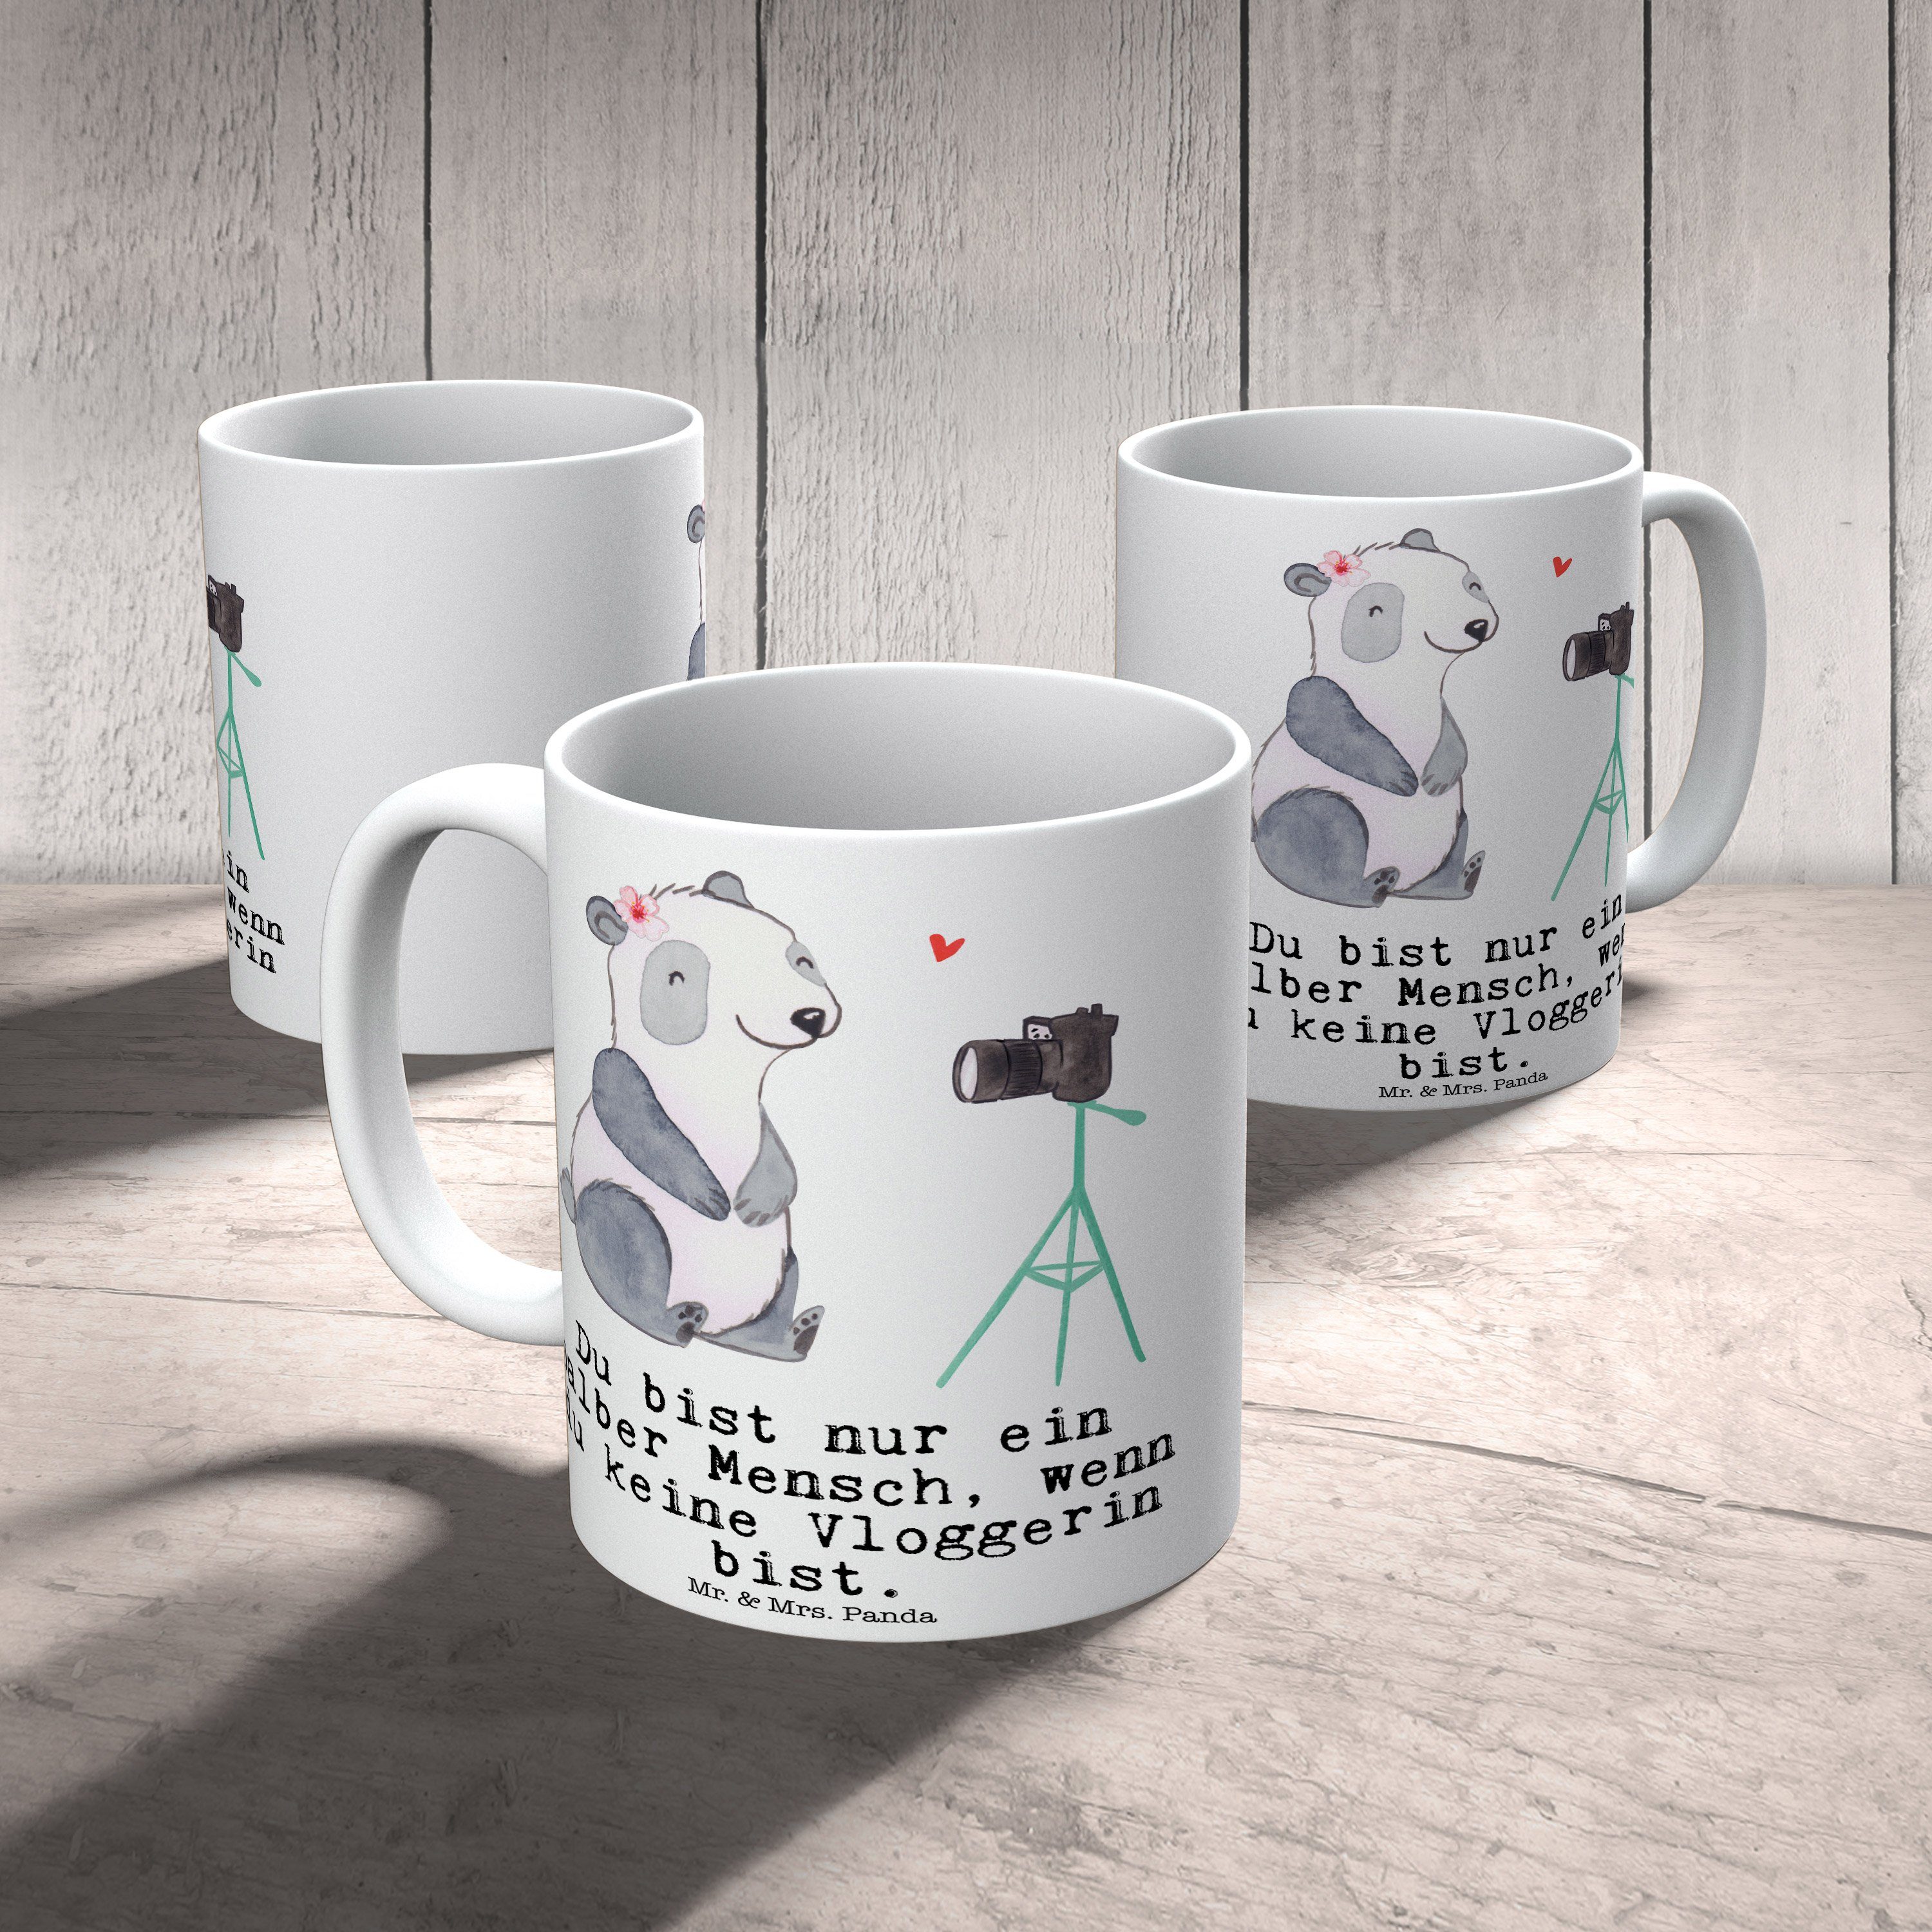 Mr. & Mrs. Panda mit Sprüche, Vloggerin Mitarbe, Keramik Kollege, Weiß Herz - - Tasse Geschenk, Tasse